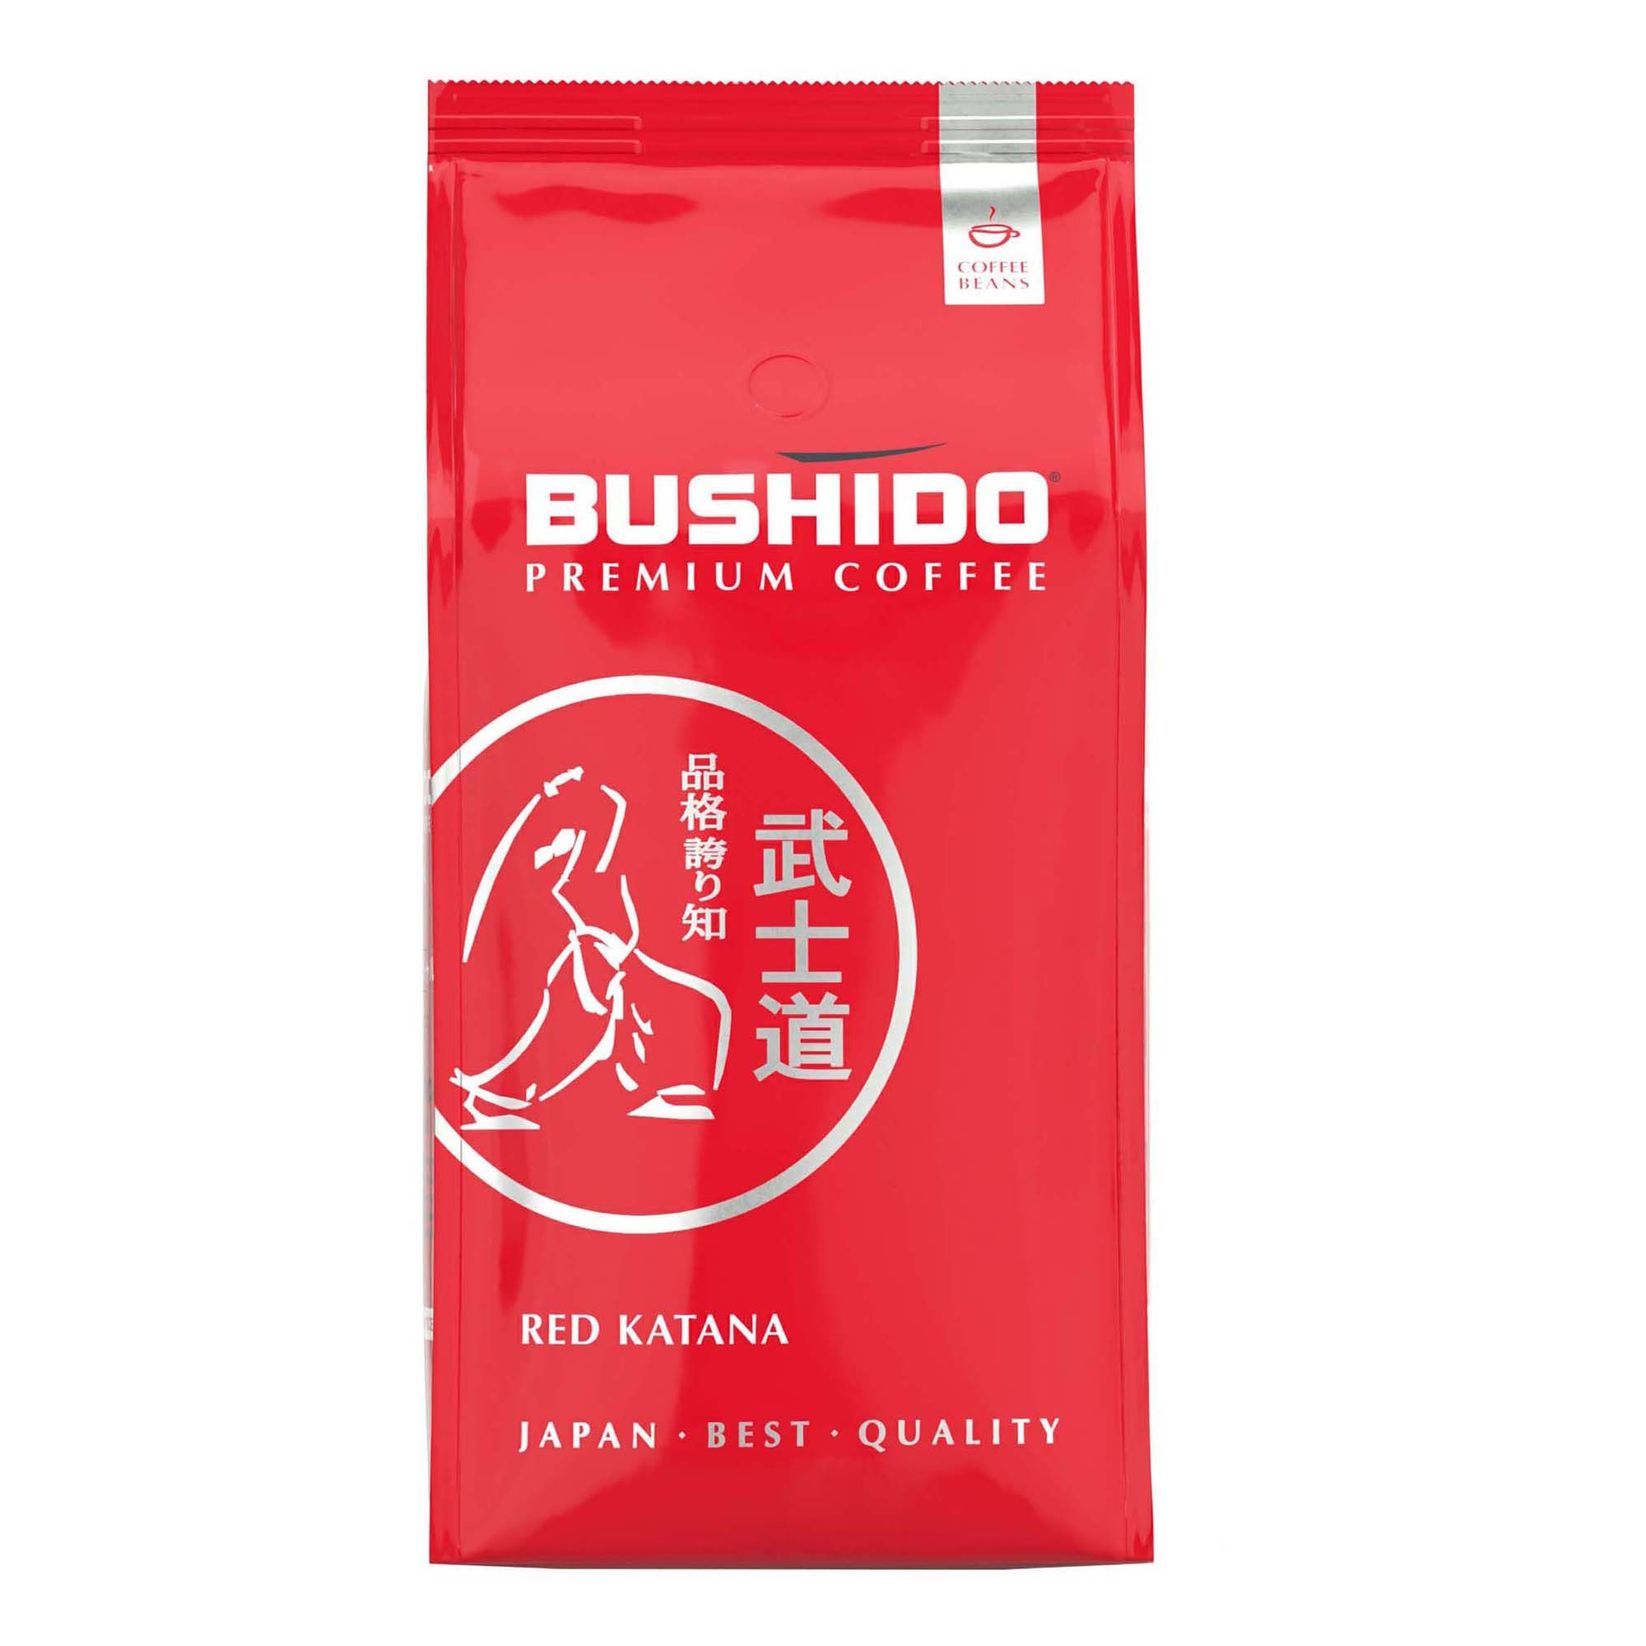 Кофе в зернах bushido red. Кофе Bushido Red Katana в зернах, Арабика, 1 кг. Bushido Red Katana в зернах. Кофе Bushido Japan best quality. Кофе в зернах Bushido Black Katana, Арабика, 1 кг.